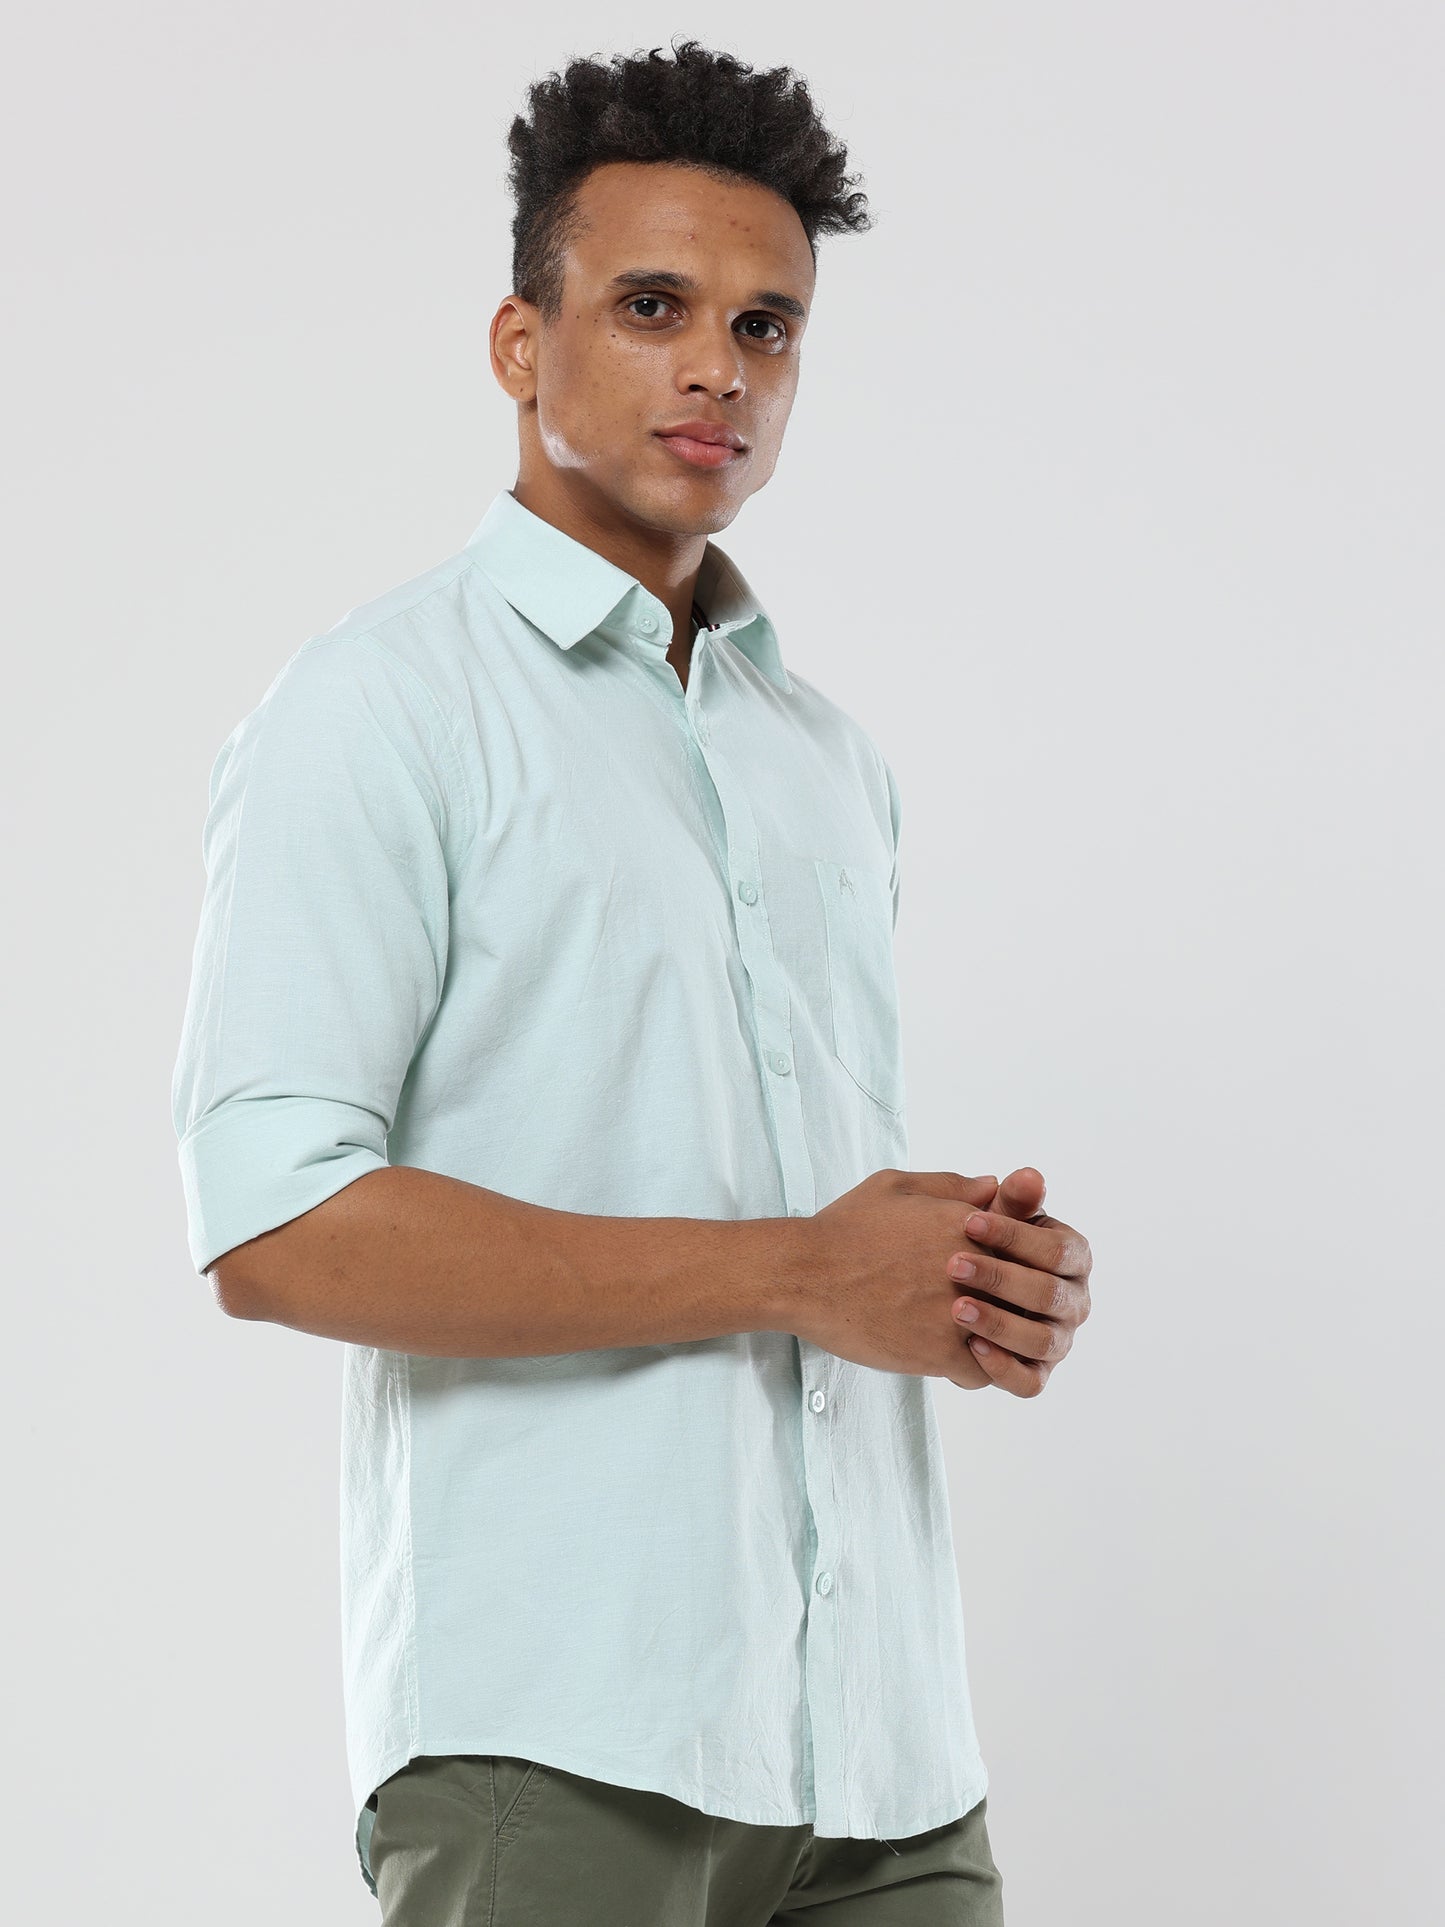 Mint Green Plain premium Cotton linen shirt with pocket for men